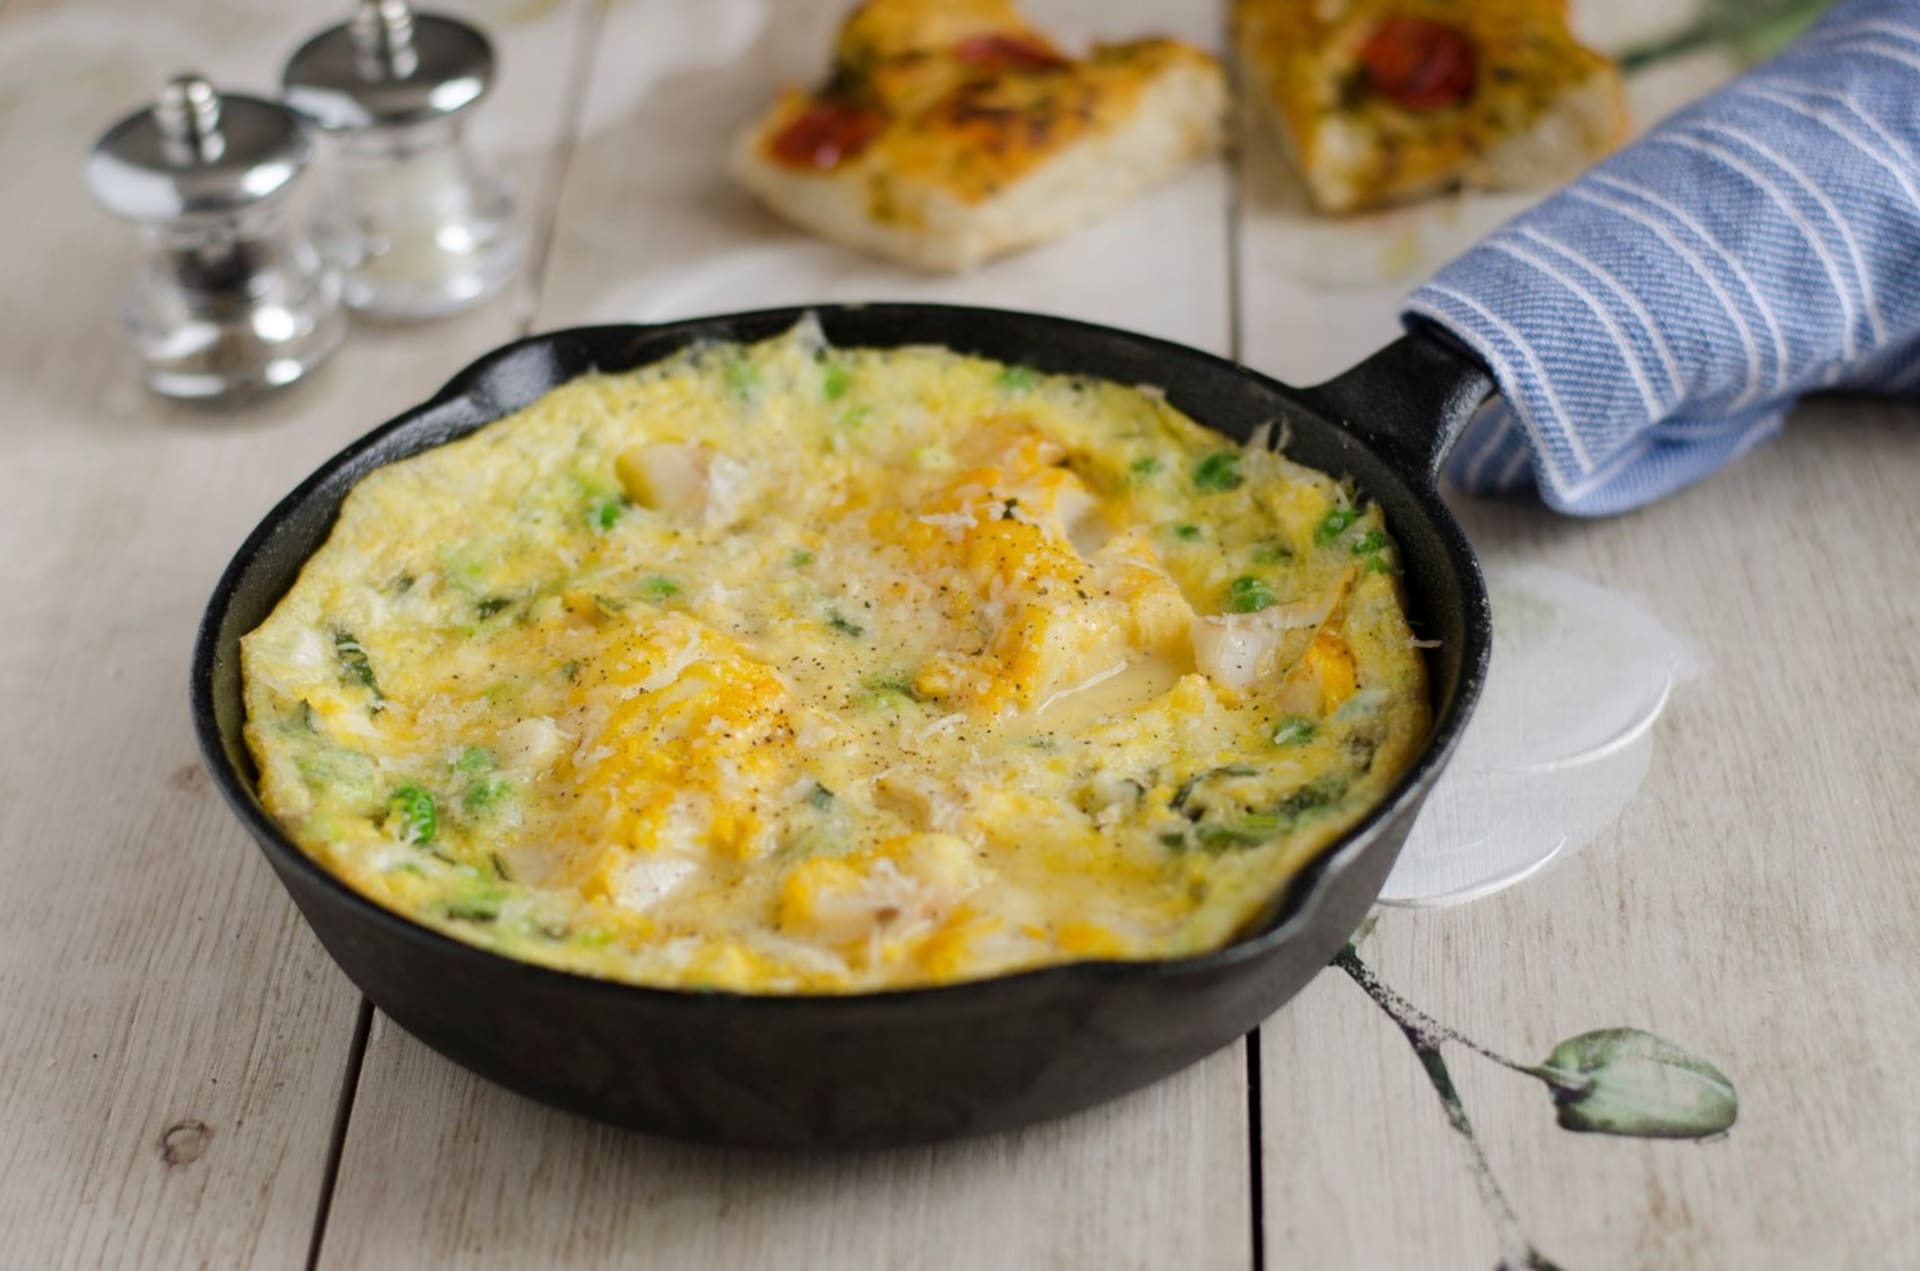 V teplé kuchyni je popenec vynikající v omeletách a dalších vaječných a bramborových pokrmech. Na jaře nejlépe vynikne v zeleninových salátech.